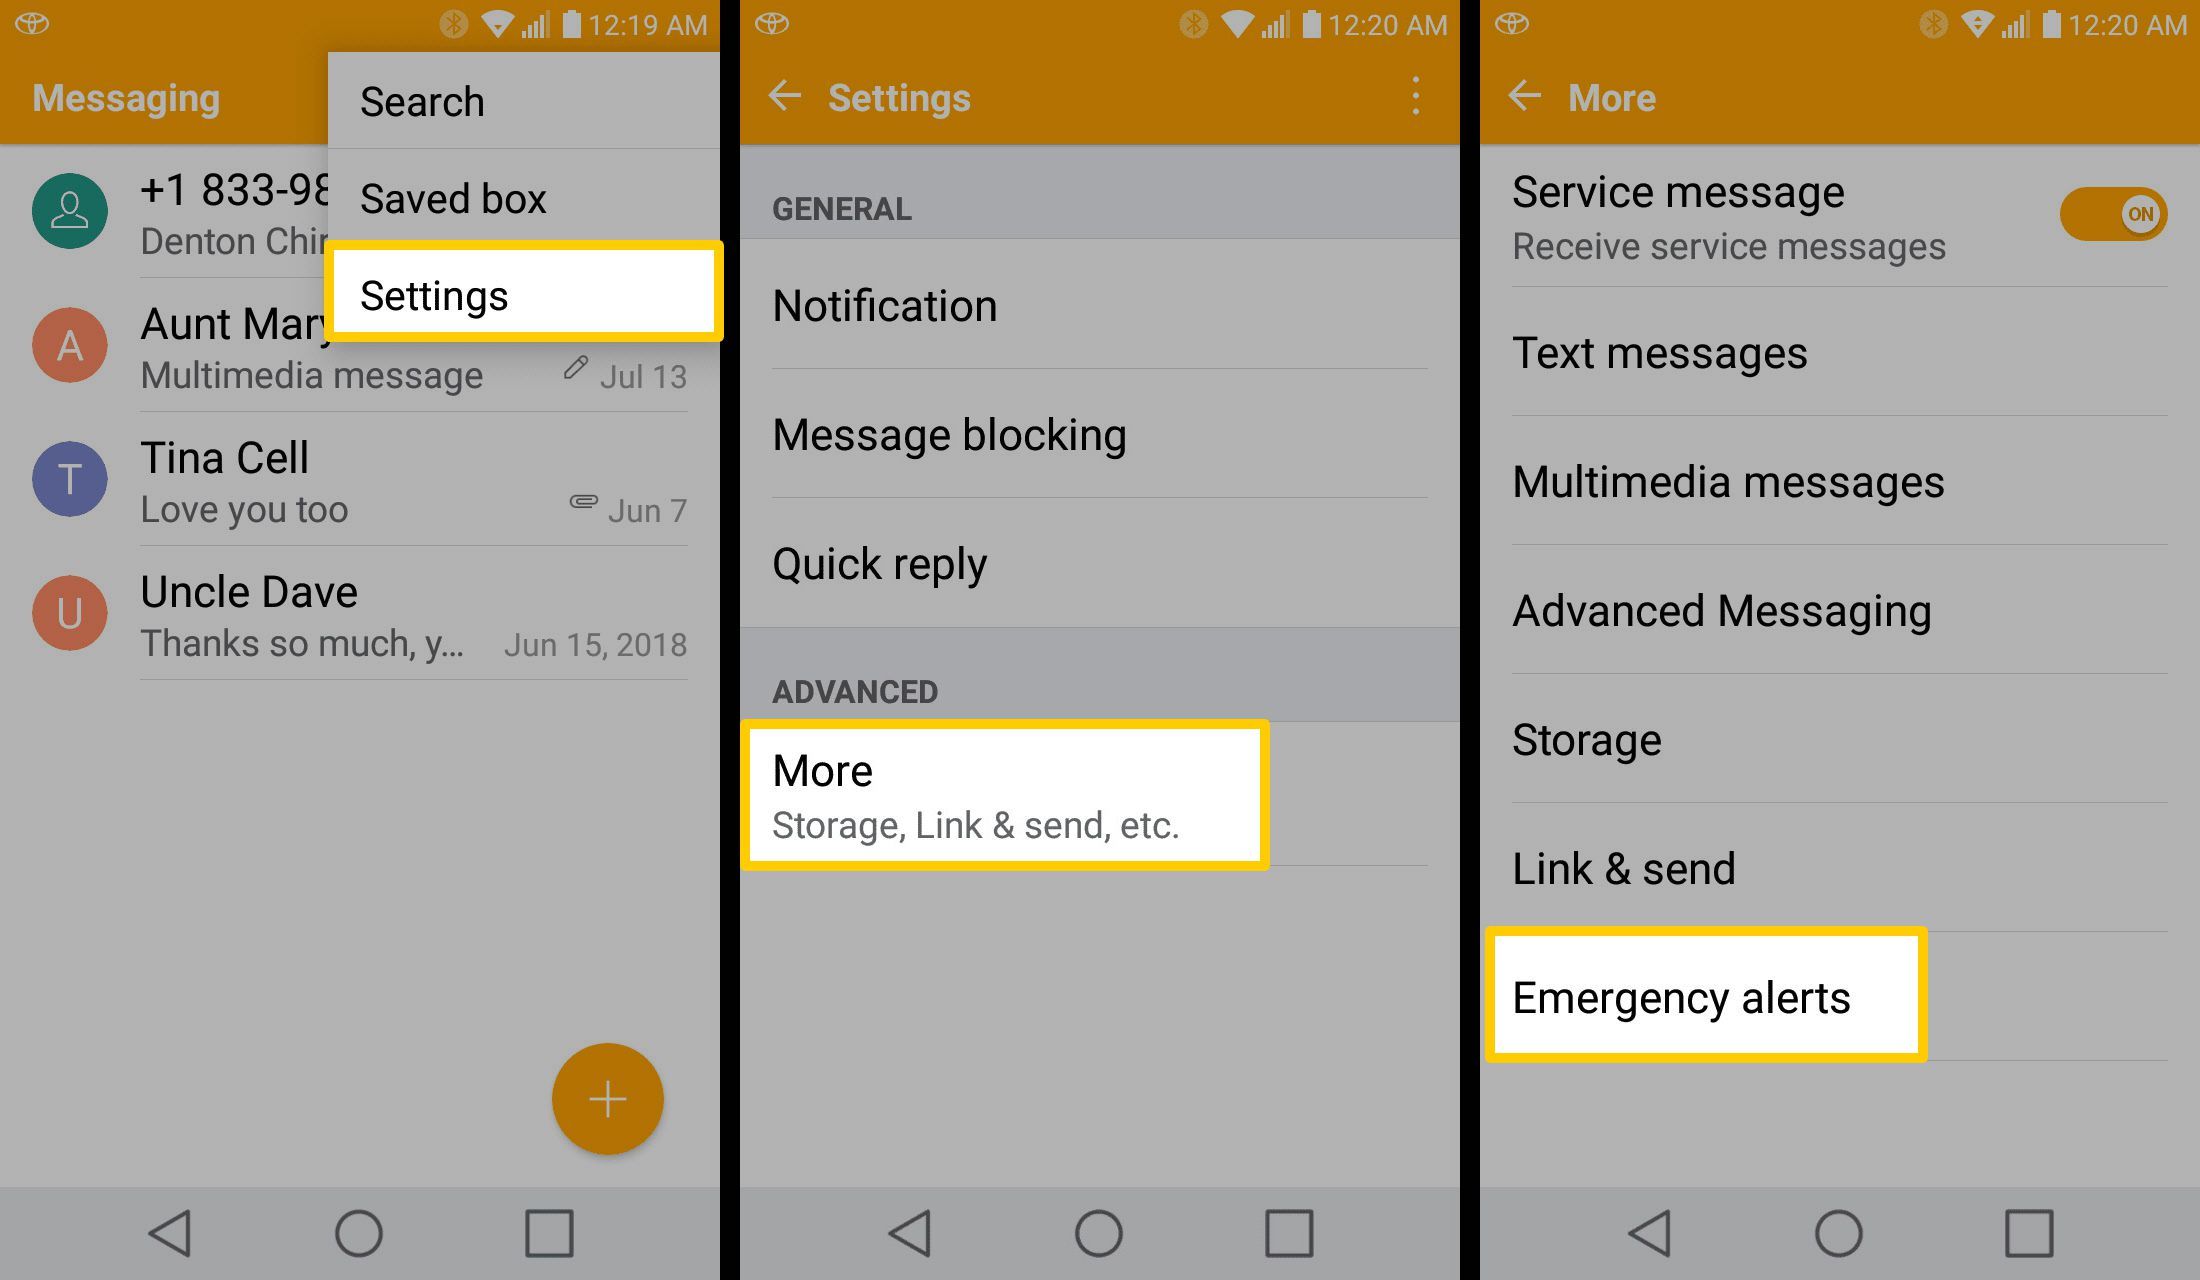 На снимках экрана показано, как получить доступ к уведомлениям Amber Alert на устройствах Android более старых моделей.